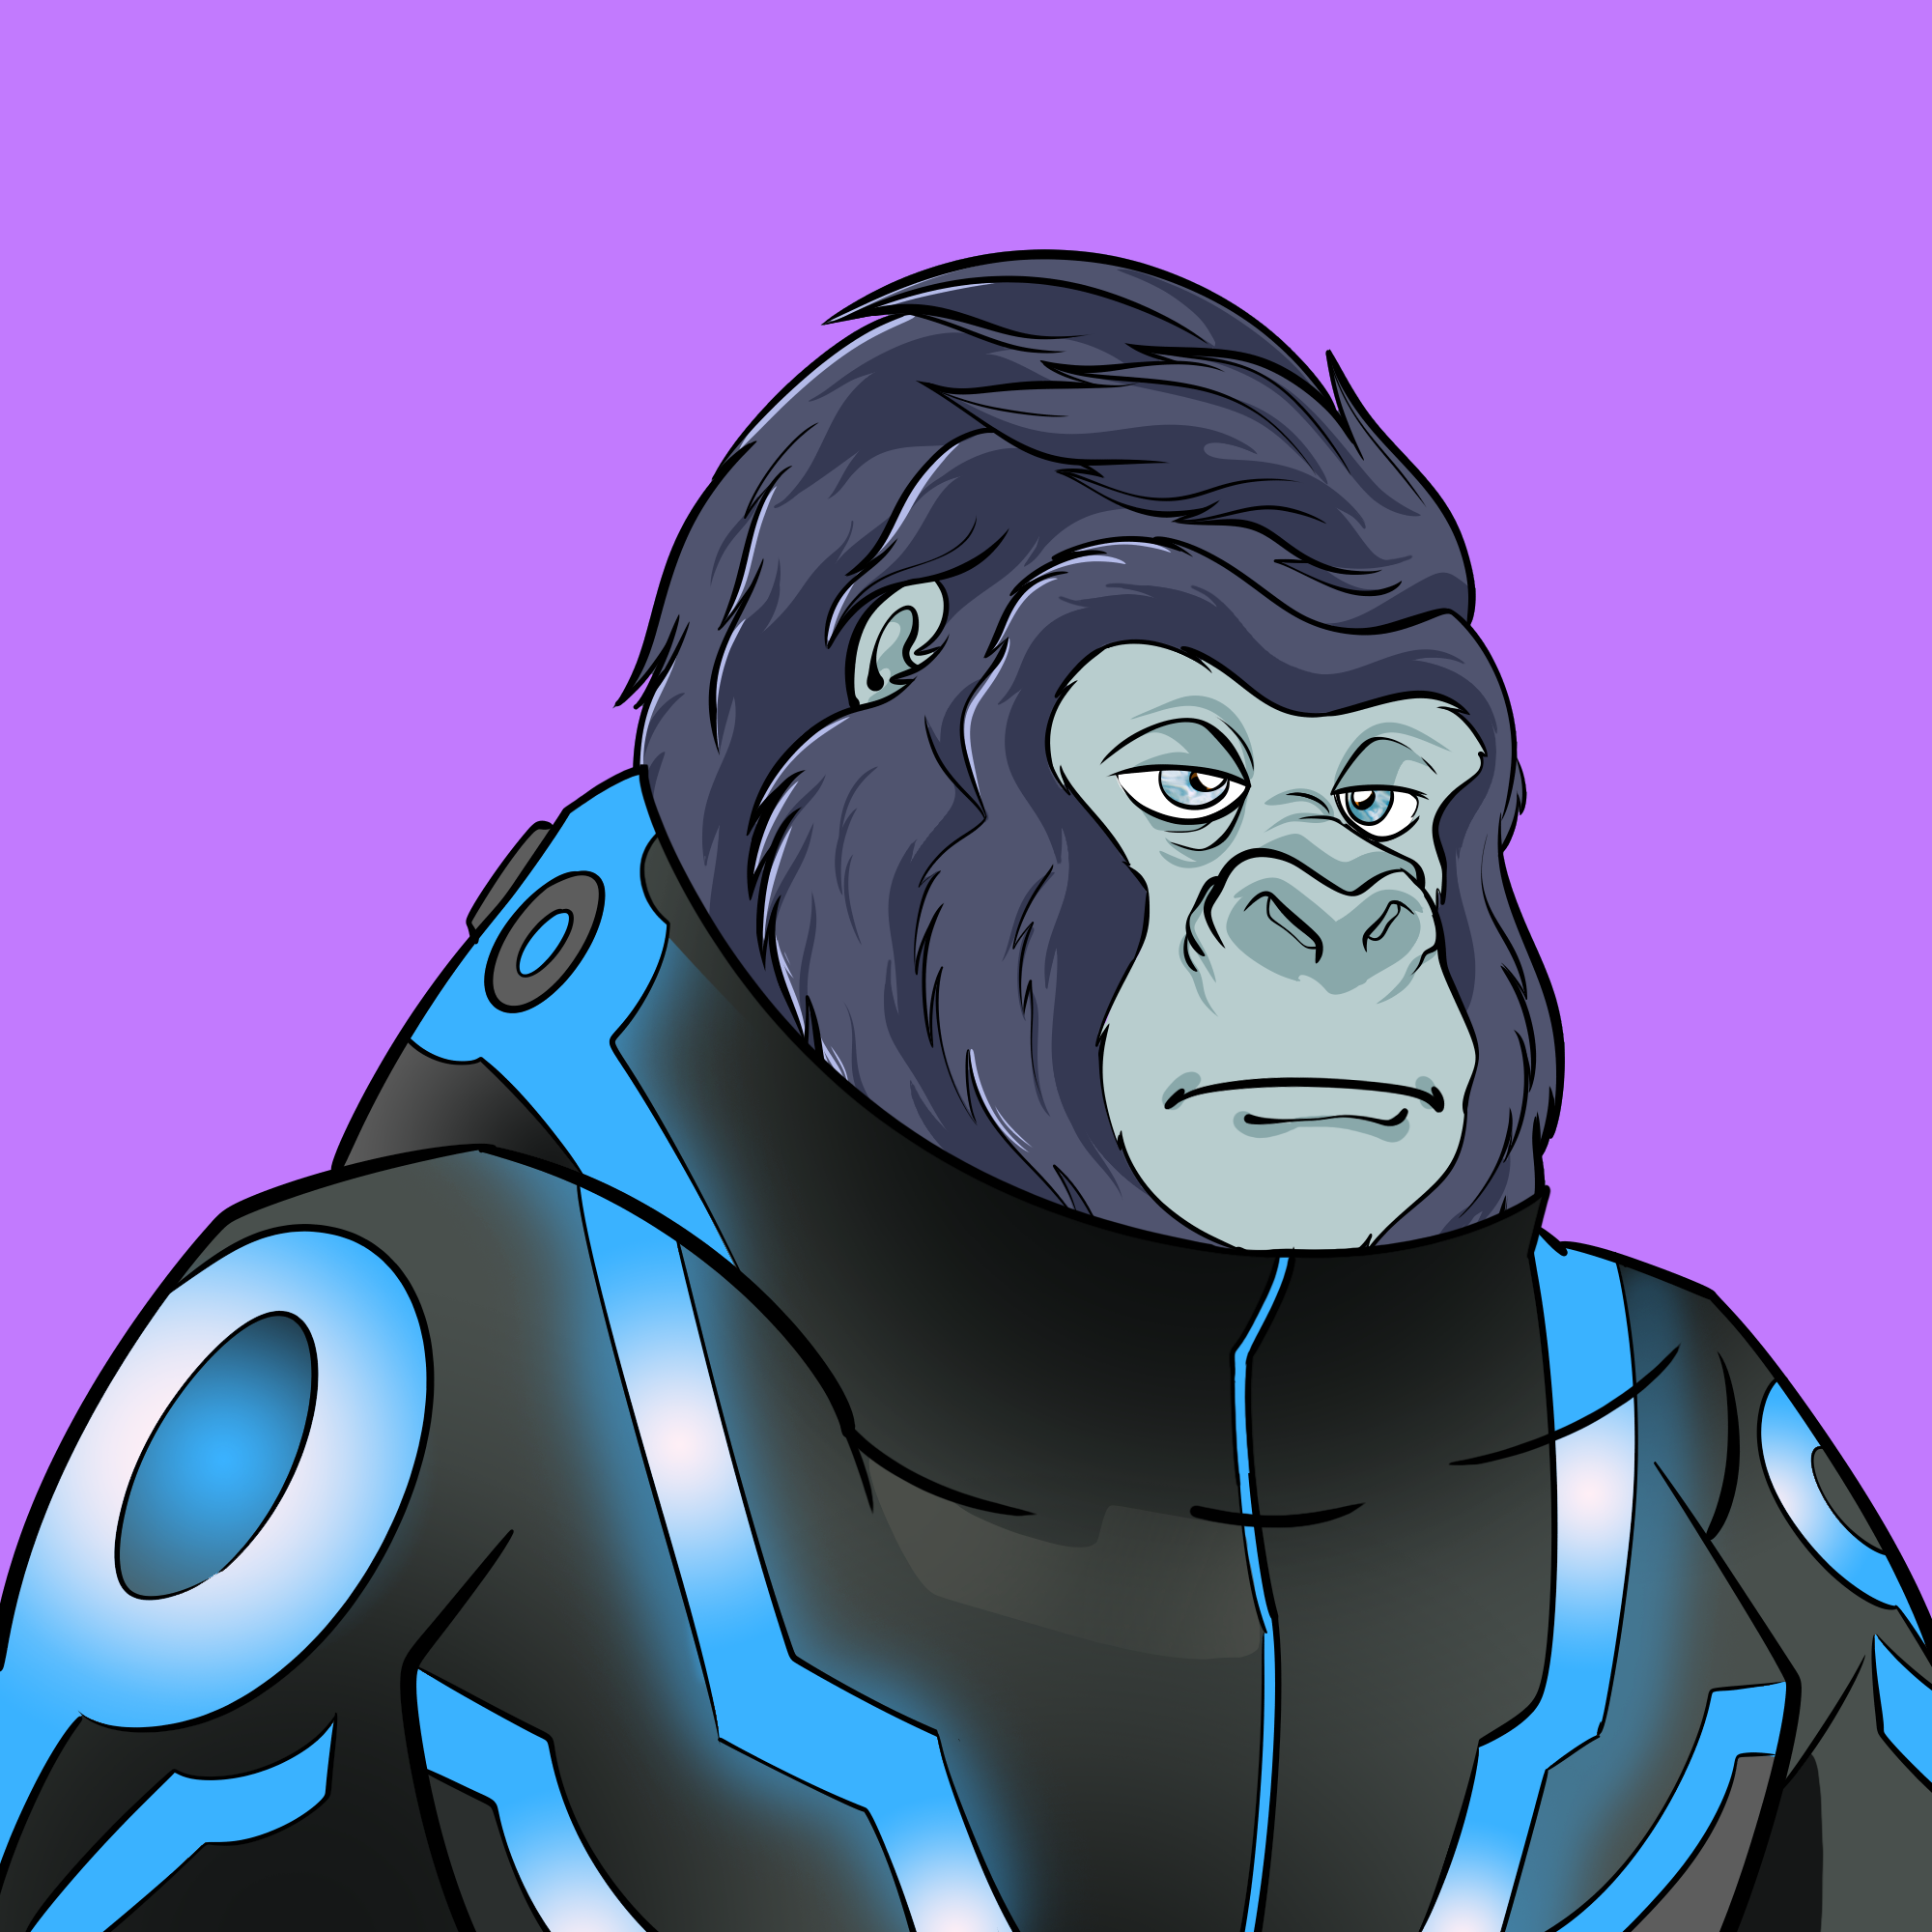 Ape#3731